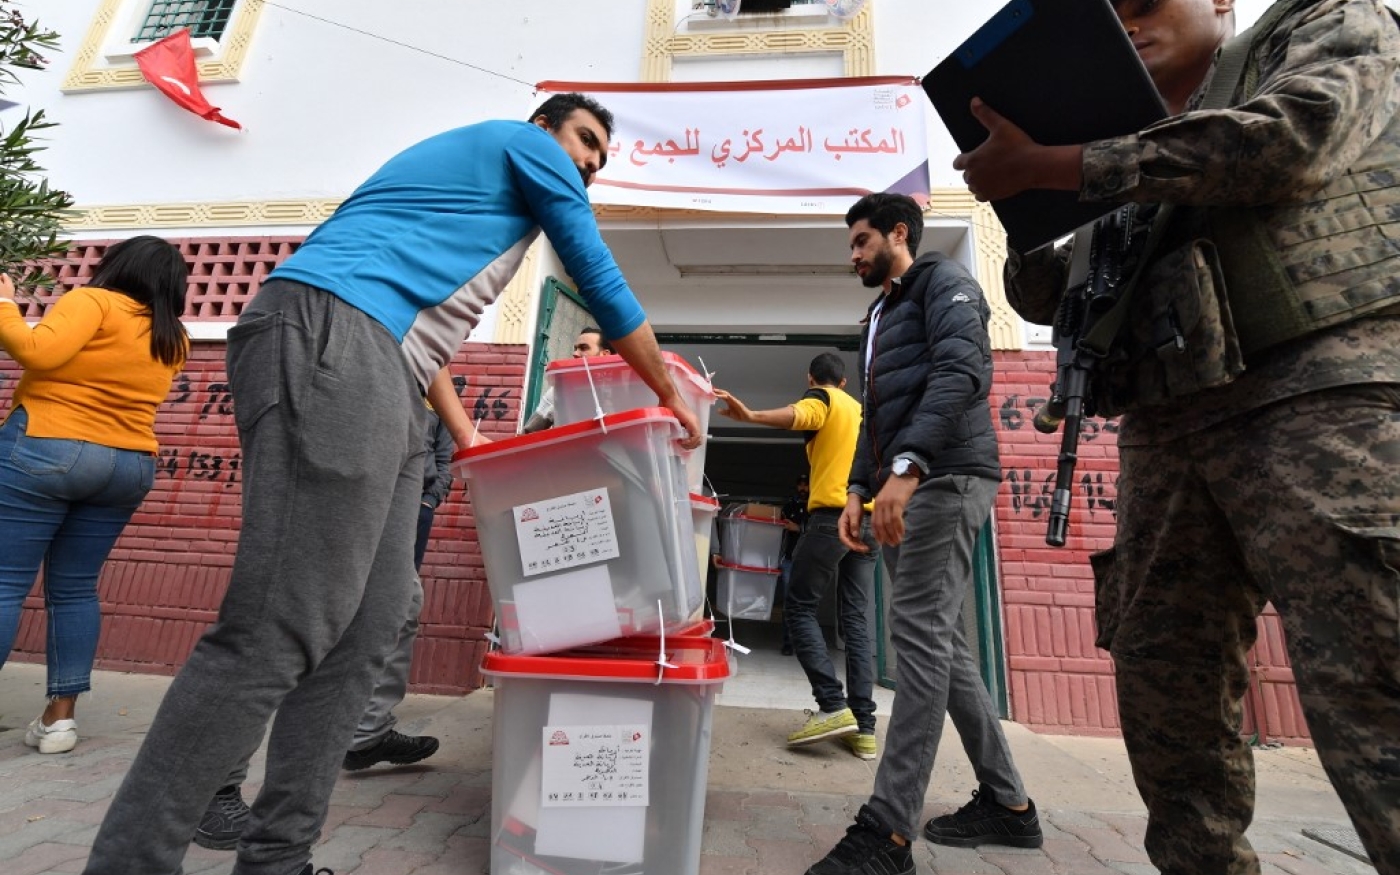 Des urnes sont manipulées sous la surveillance des militaires, dans L’Ariana, près de Tunis, le 16 décembre 2022 (AFP/Fethi Belaid)